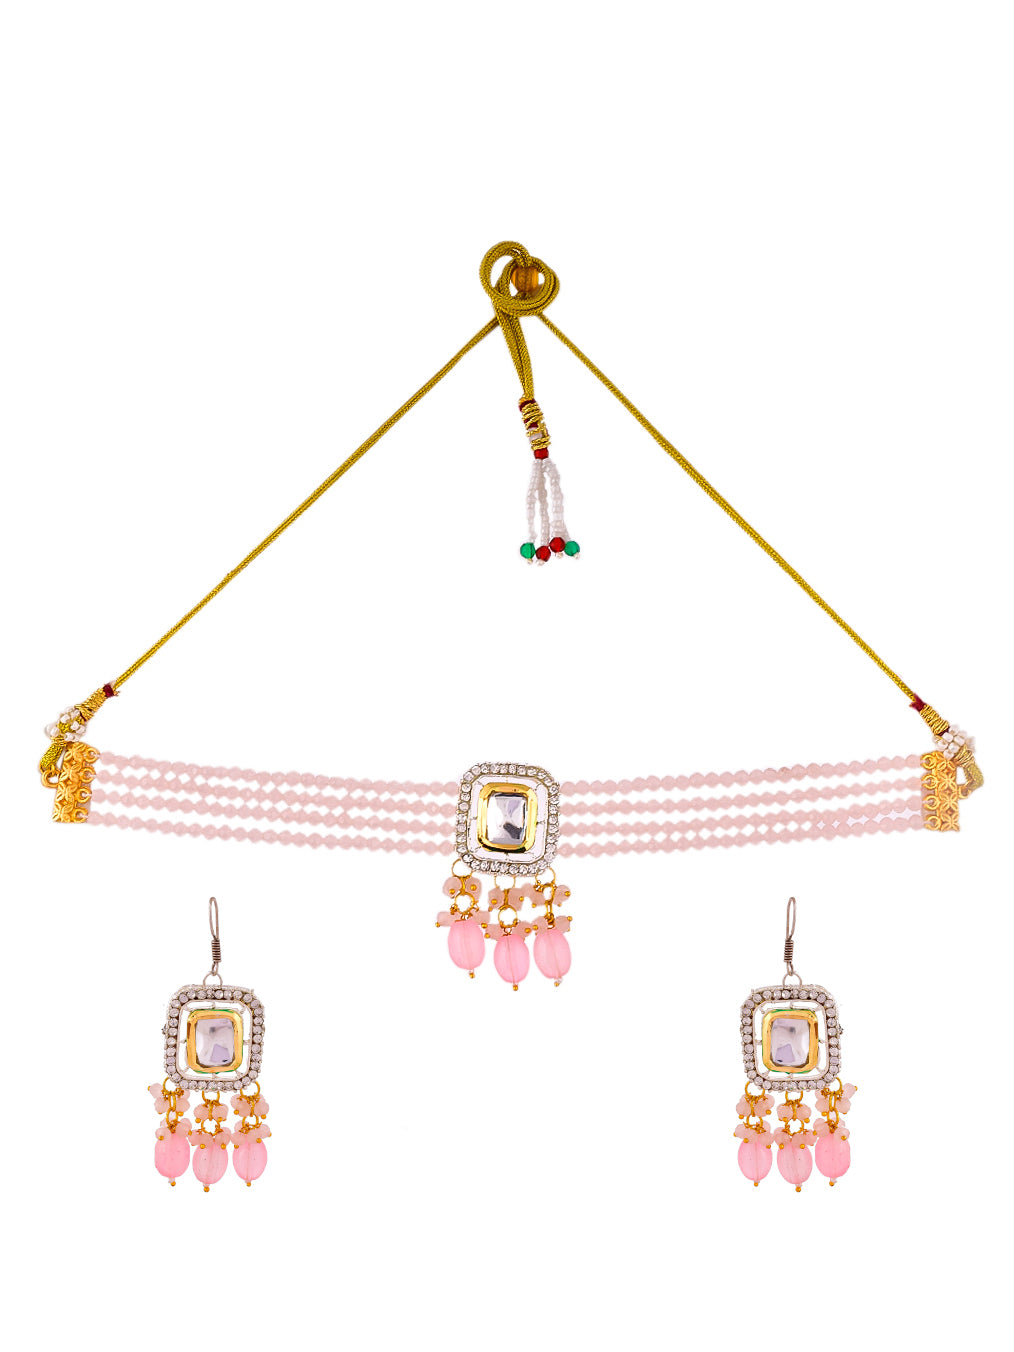 Kundan Layered Choker Jewellery set